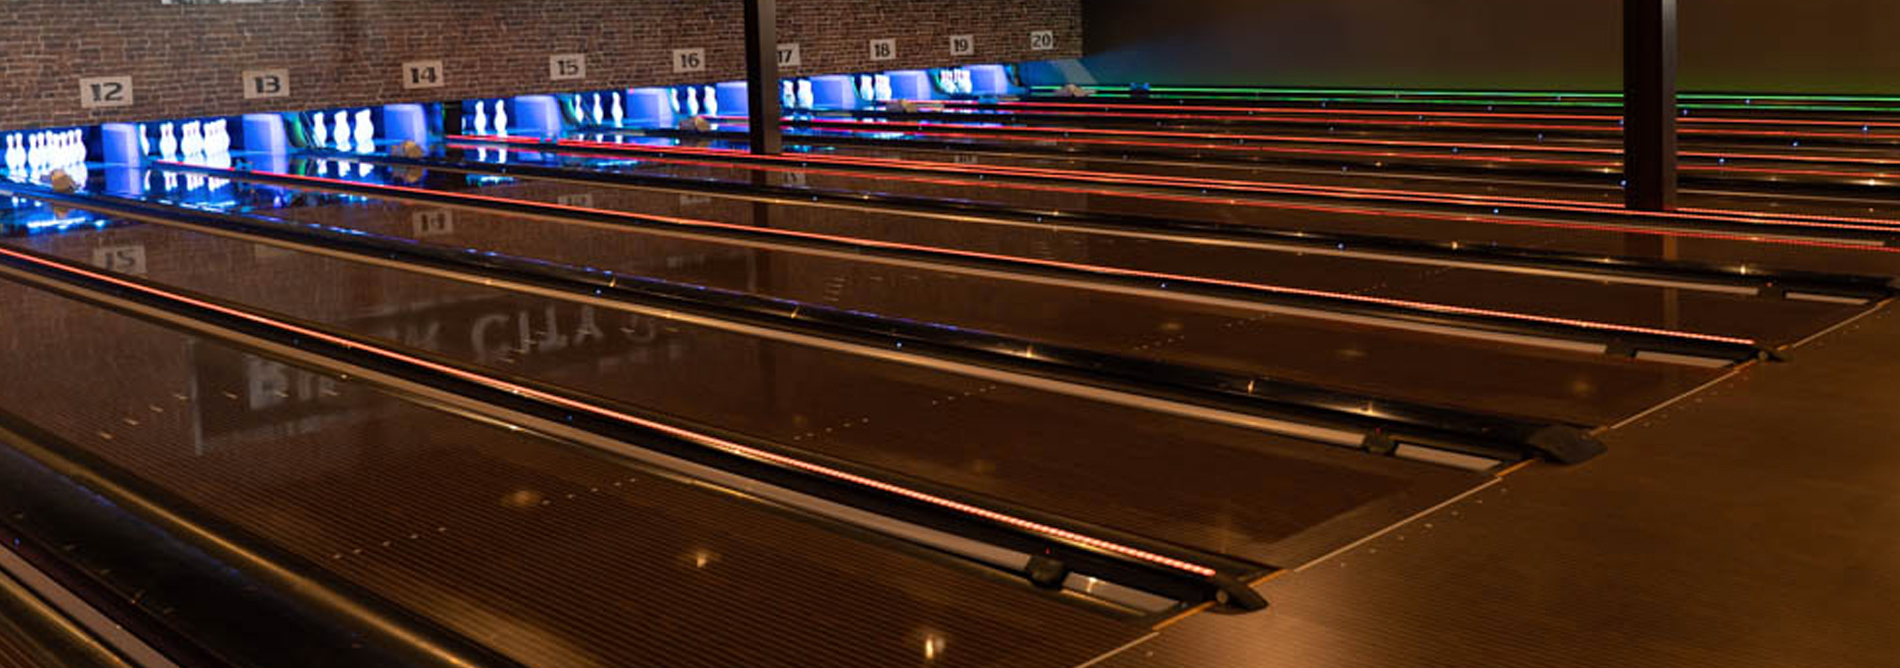 Bowling-QubicaAMF-CenterPunch Deck Lighting-Brochures-banner.jpg